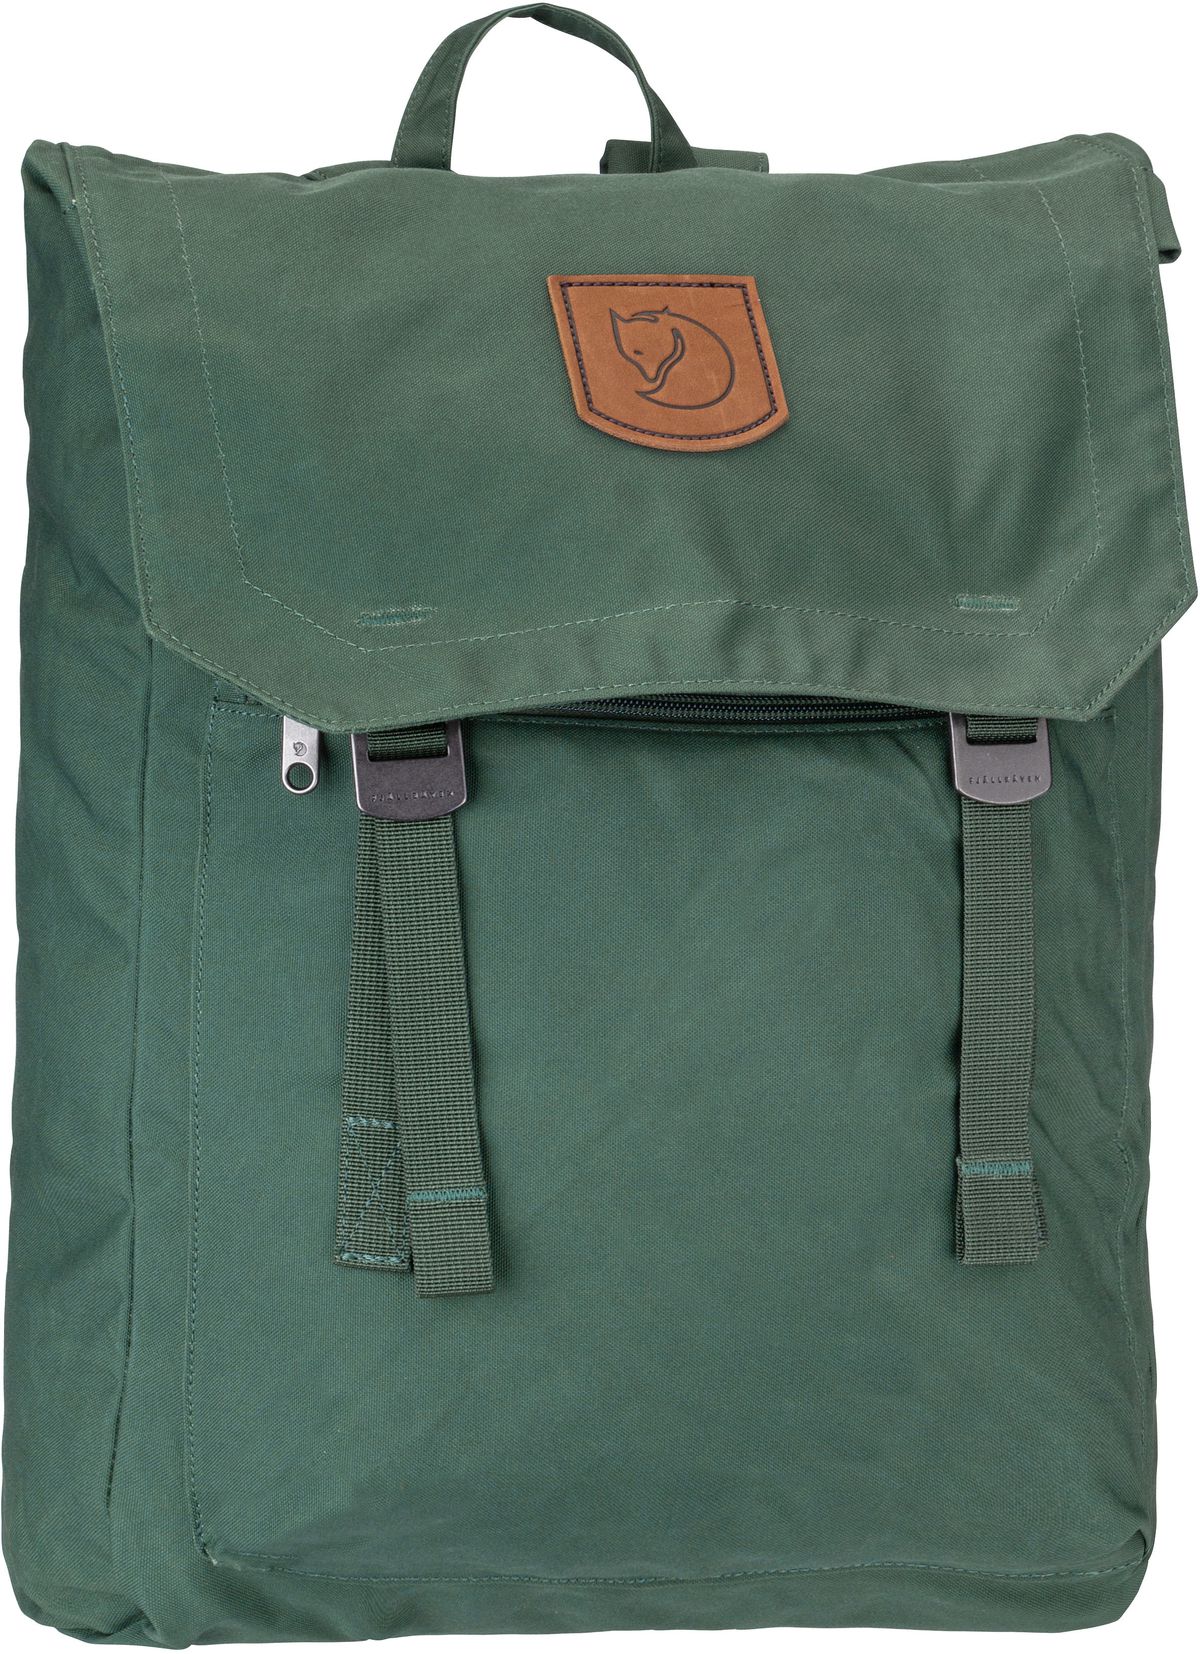 Fjällräven Foldsack No.1  in Deep Patina (16 Liter), Rucksack / Backpack